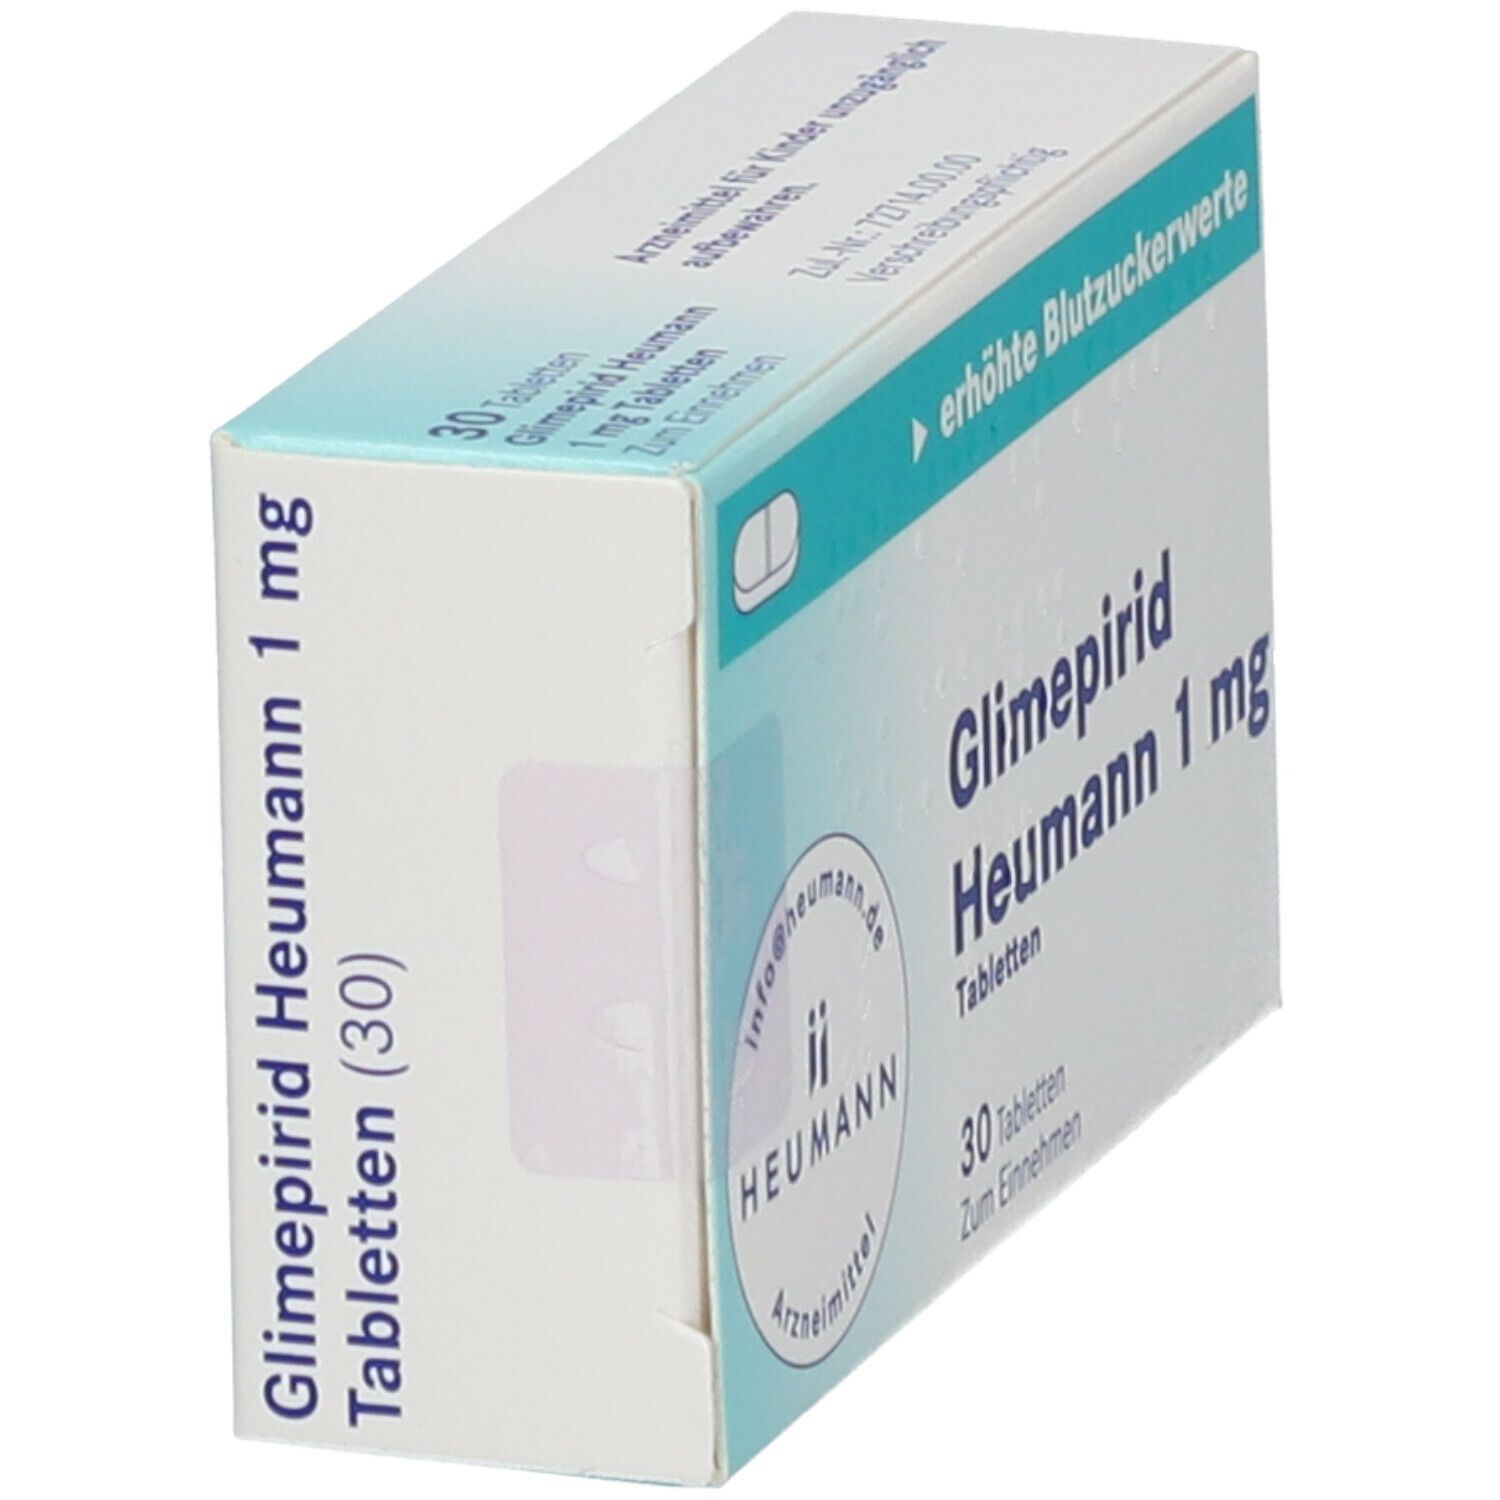 GLIMEPIRID Heumann 1 mg Tabletten